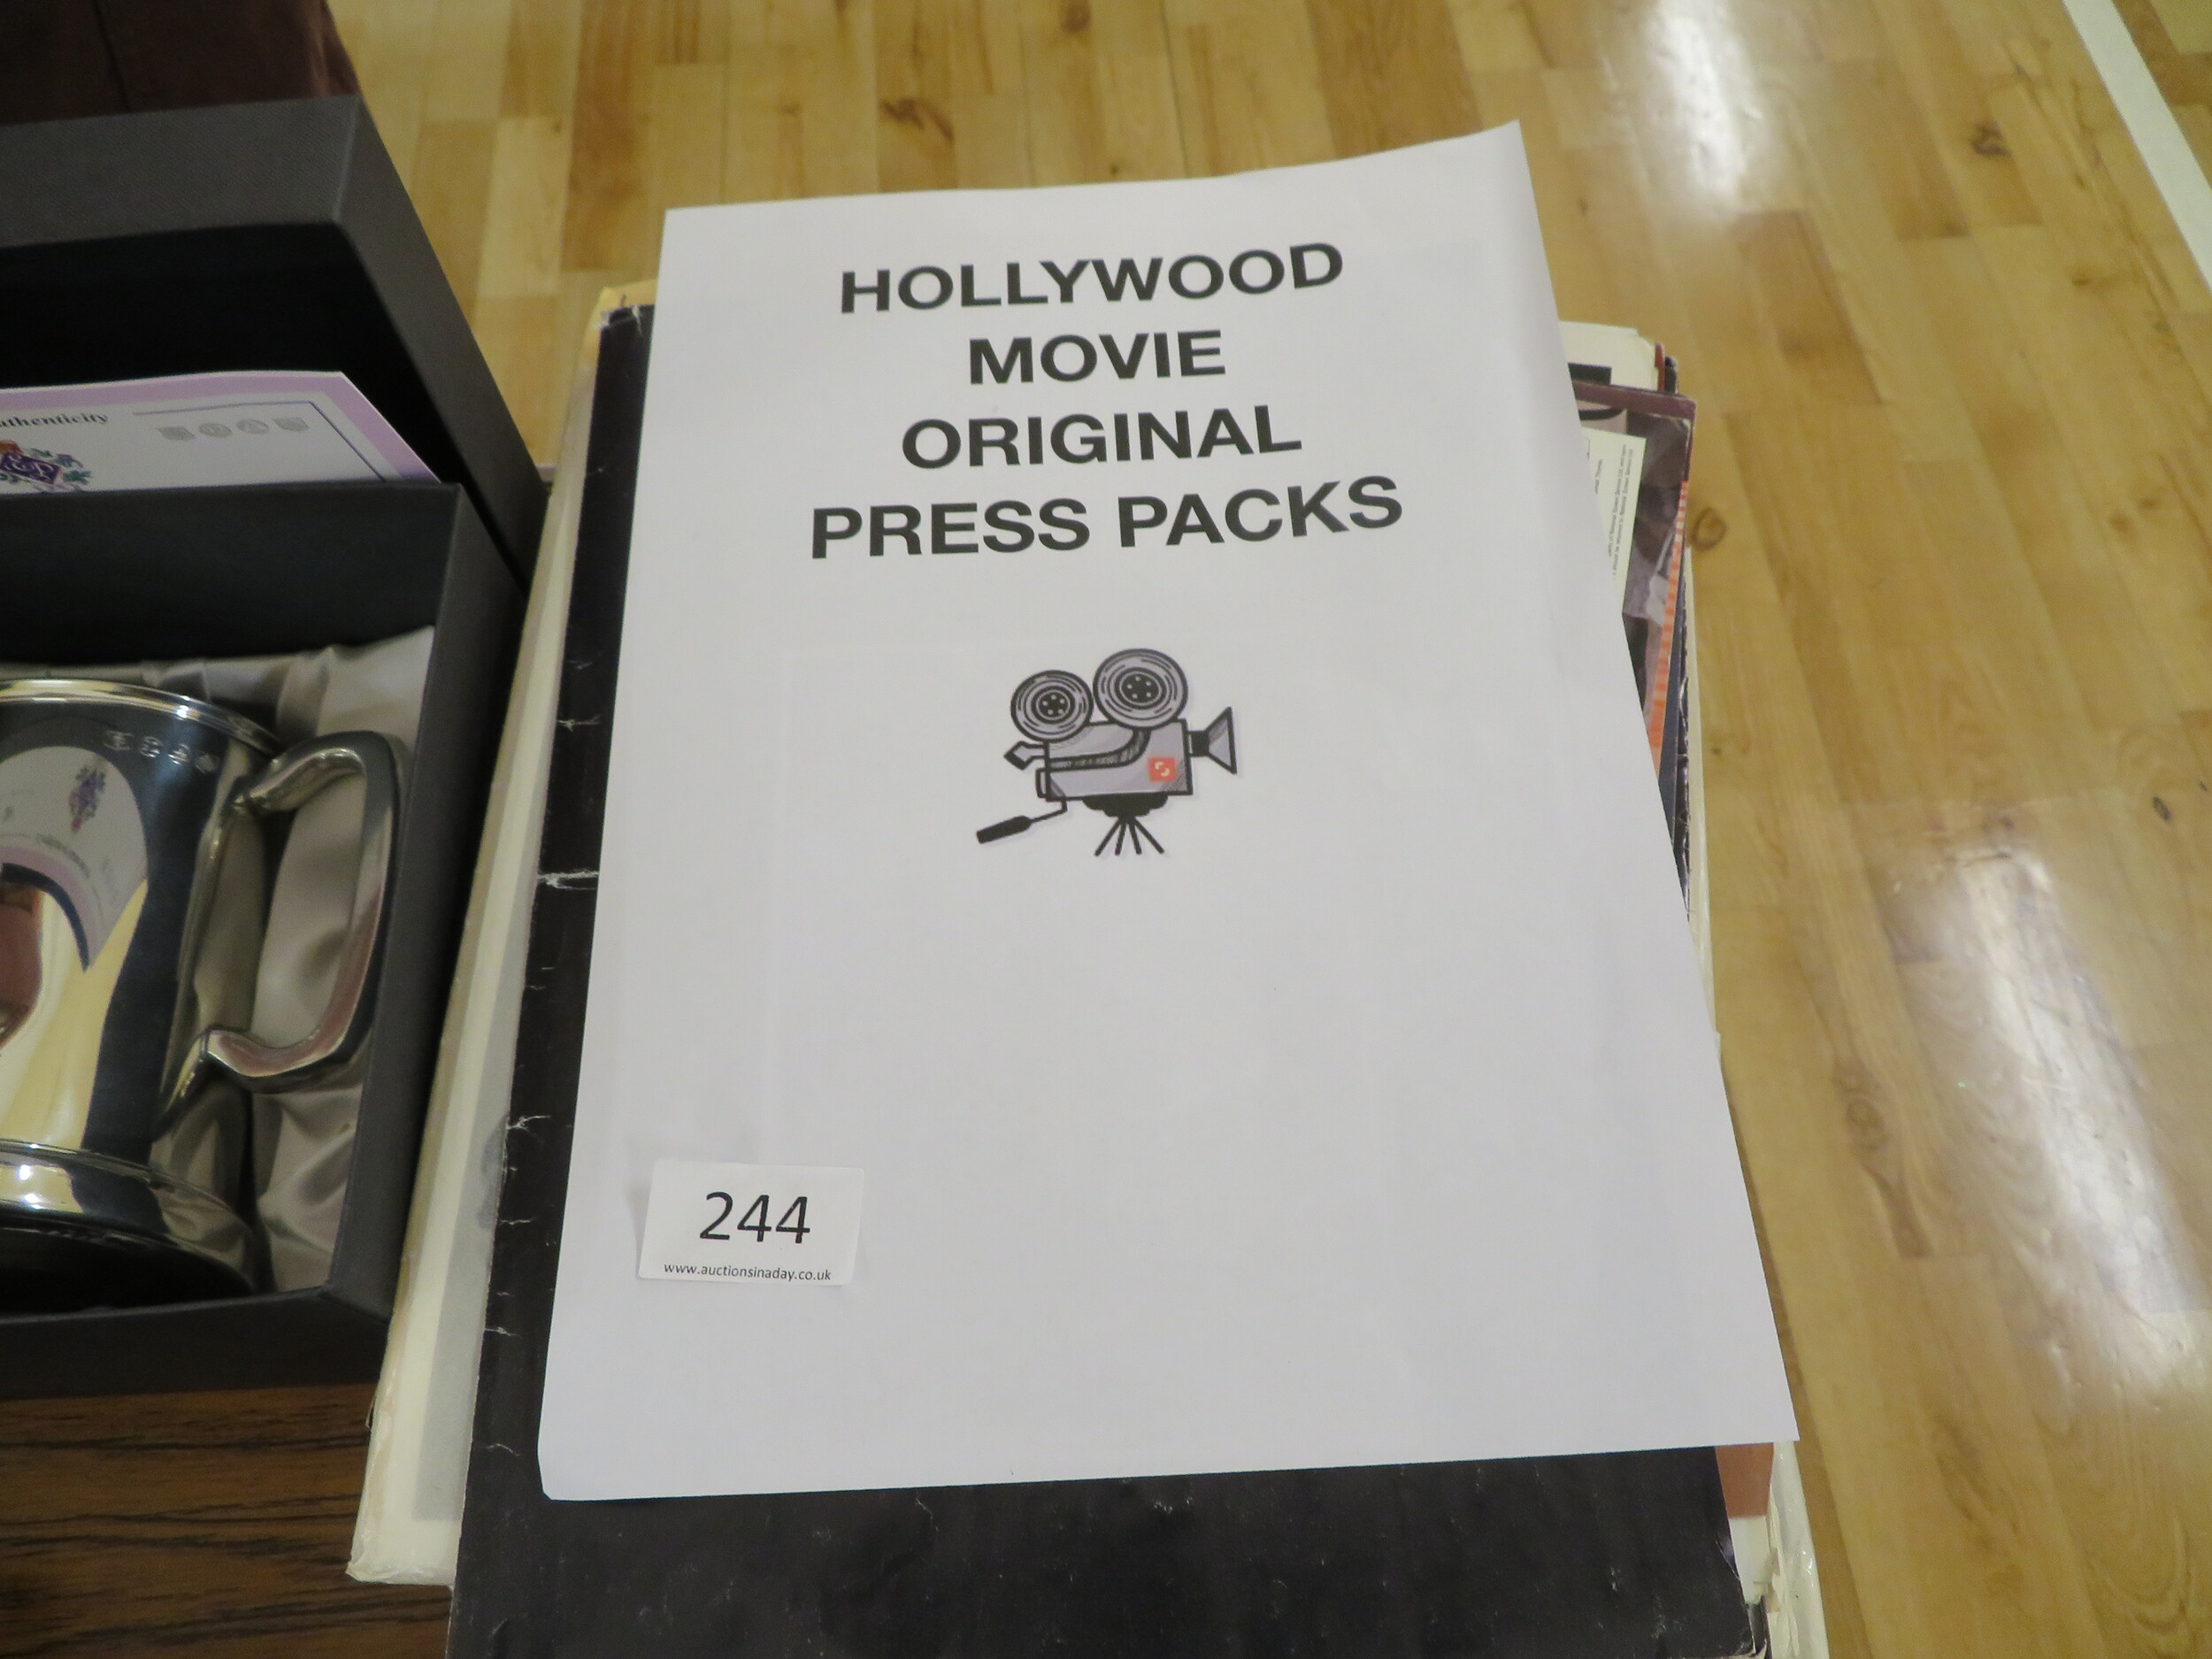 Movie Press Packs and photos